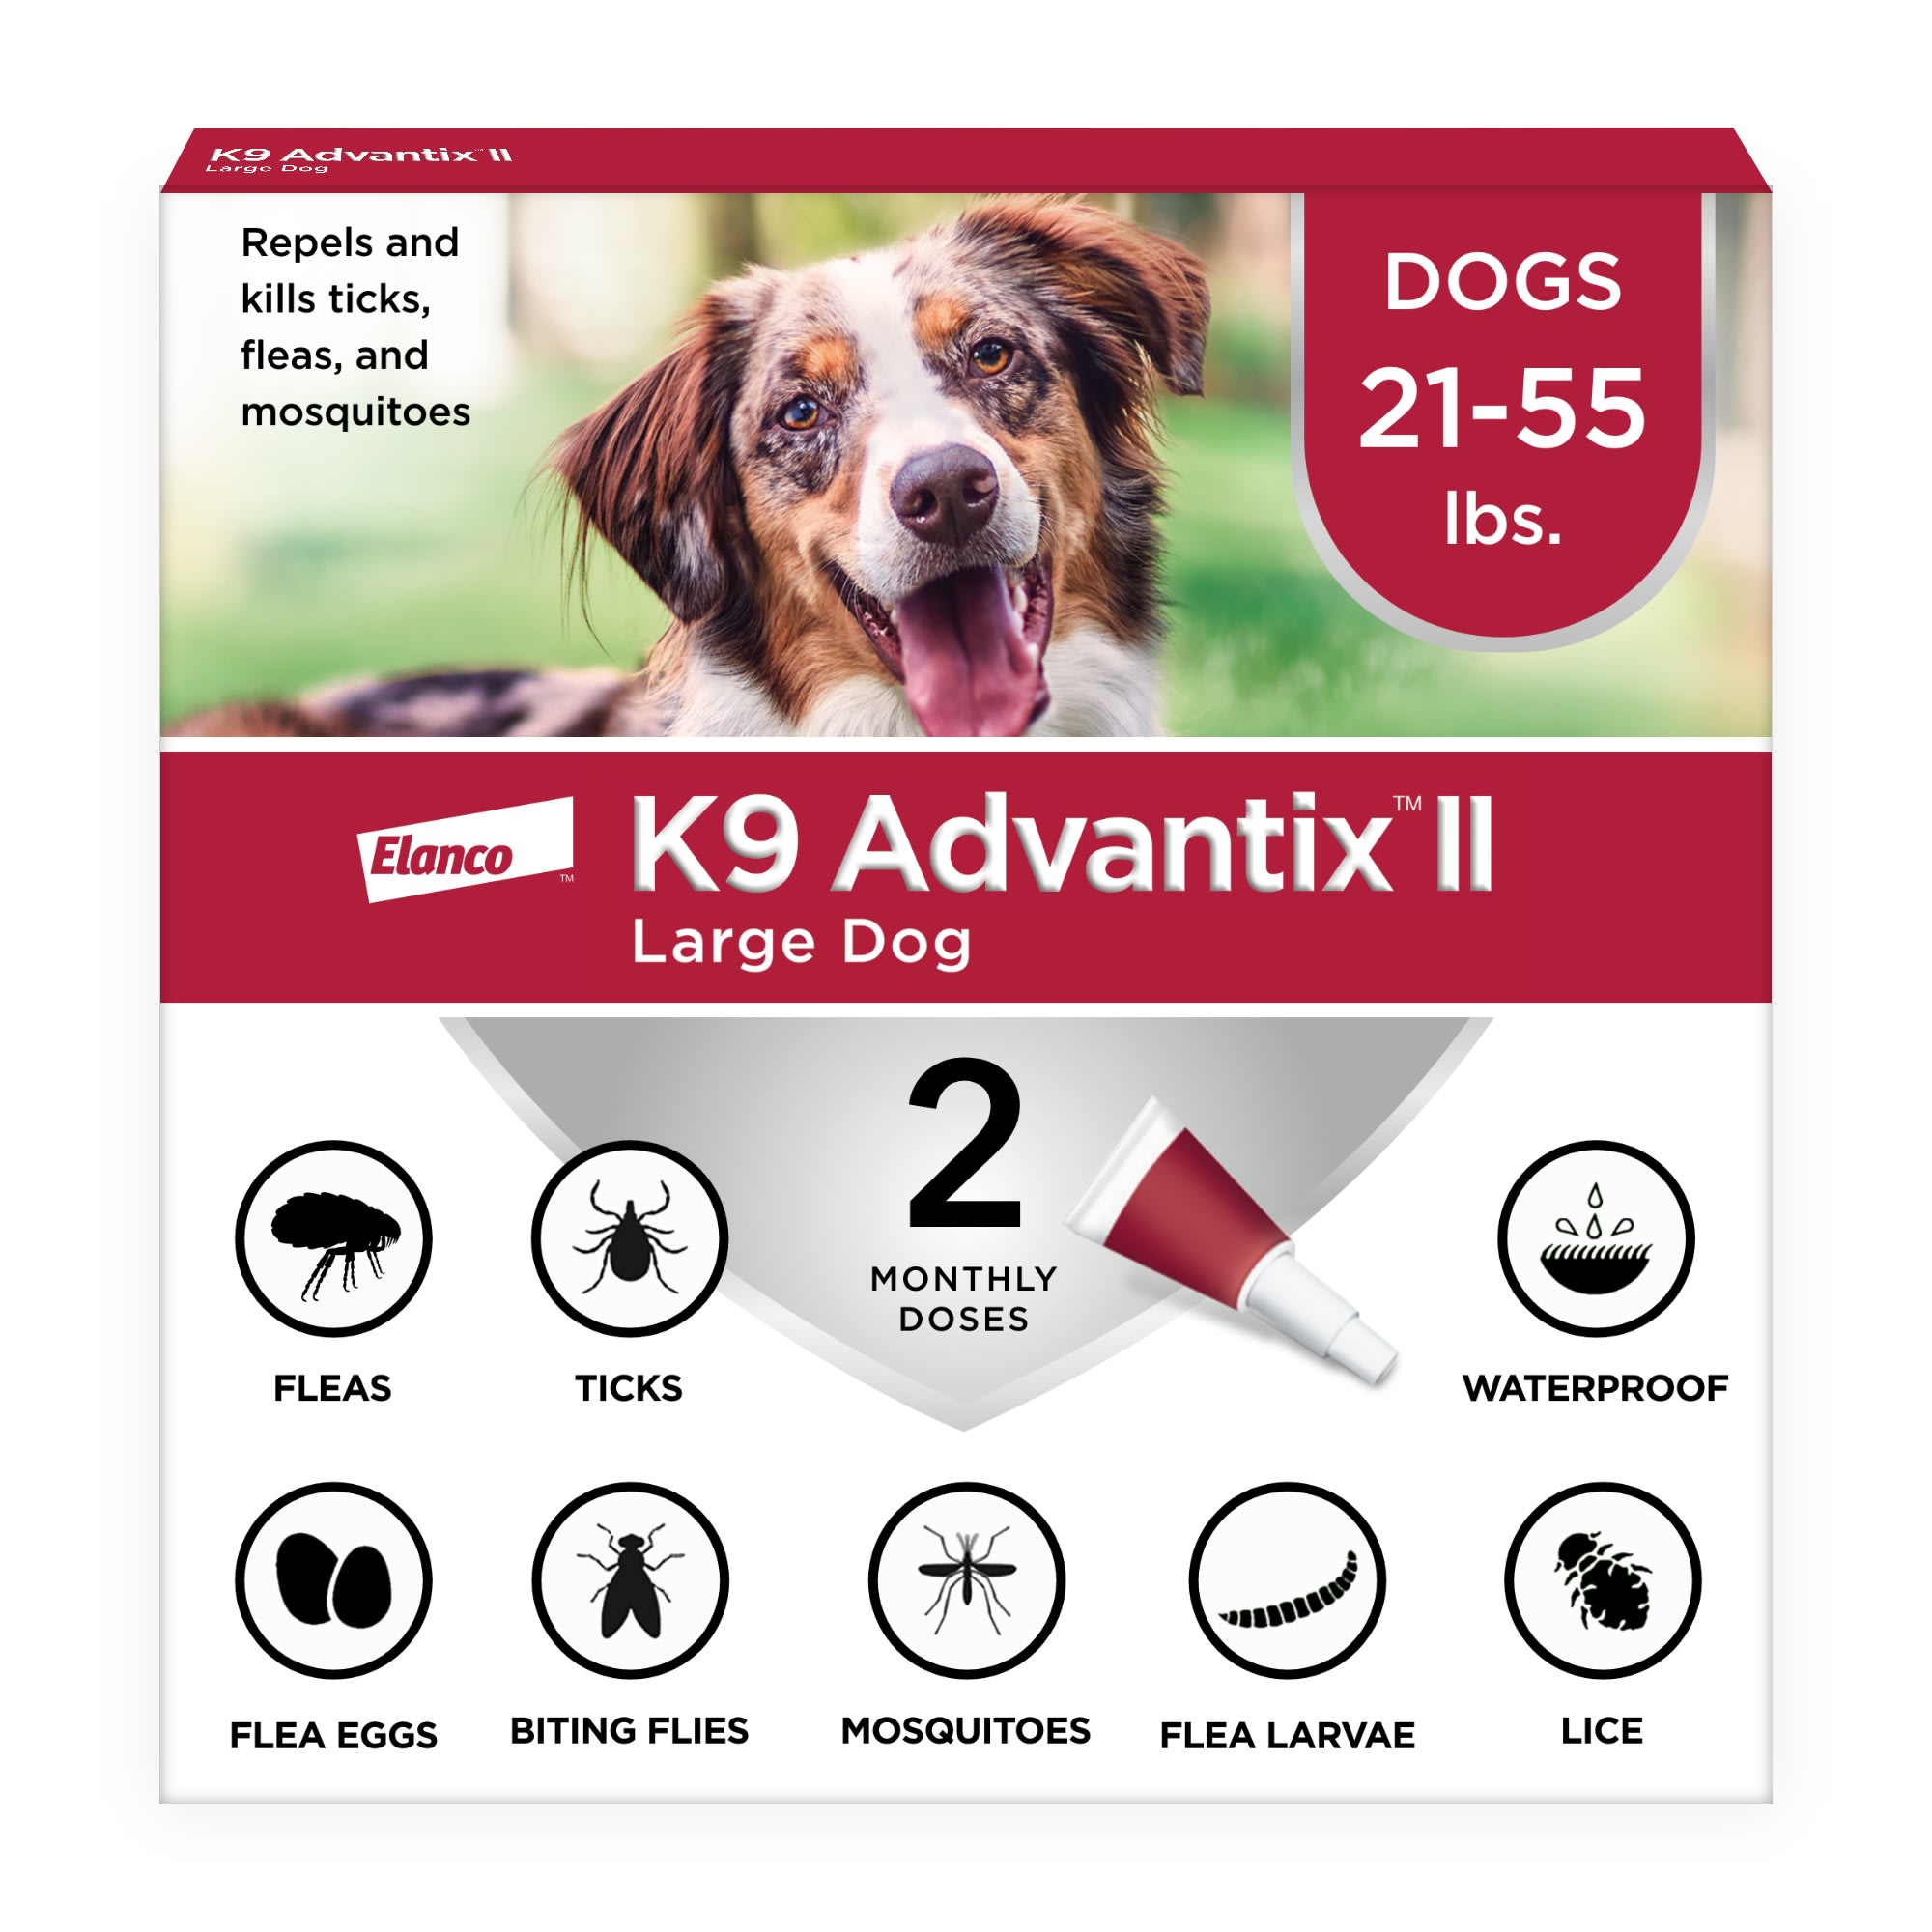 Photos - Dog Medicines & Vitamins K9 Advantix II K9 Advantix II Vet-Recommended Flea, Tick & Mosquito Treatm